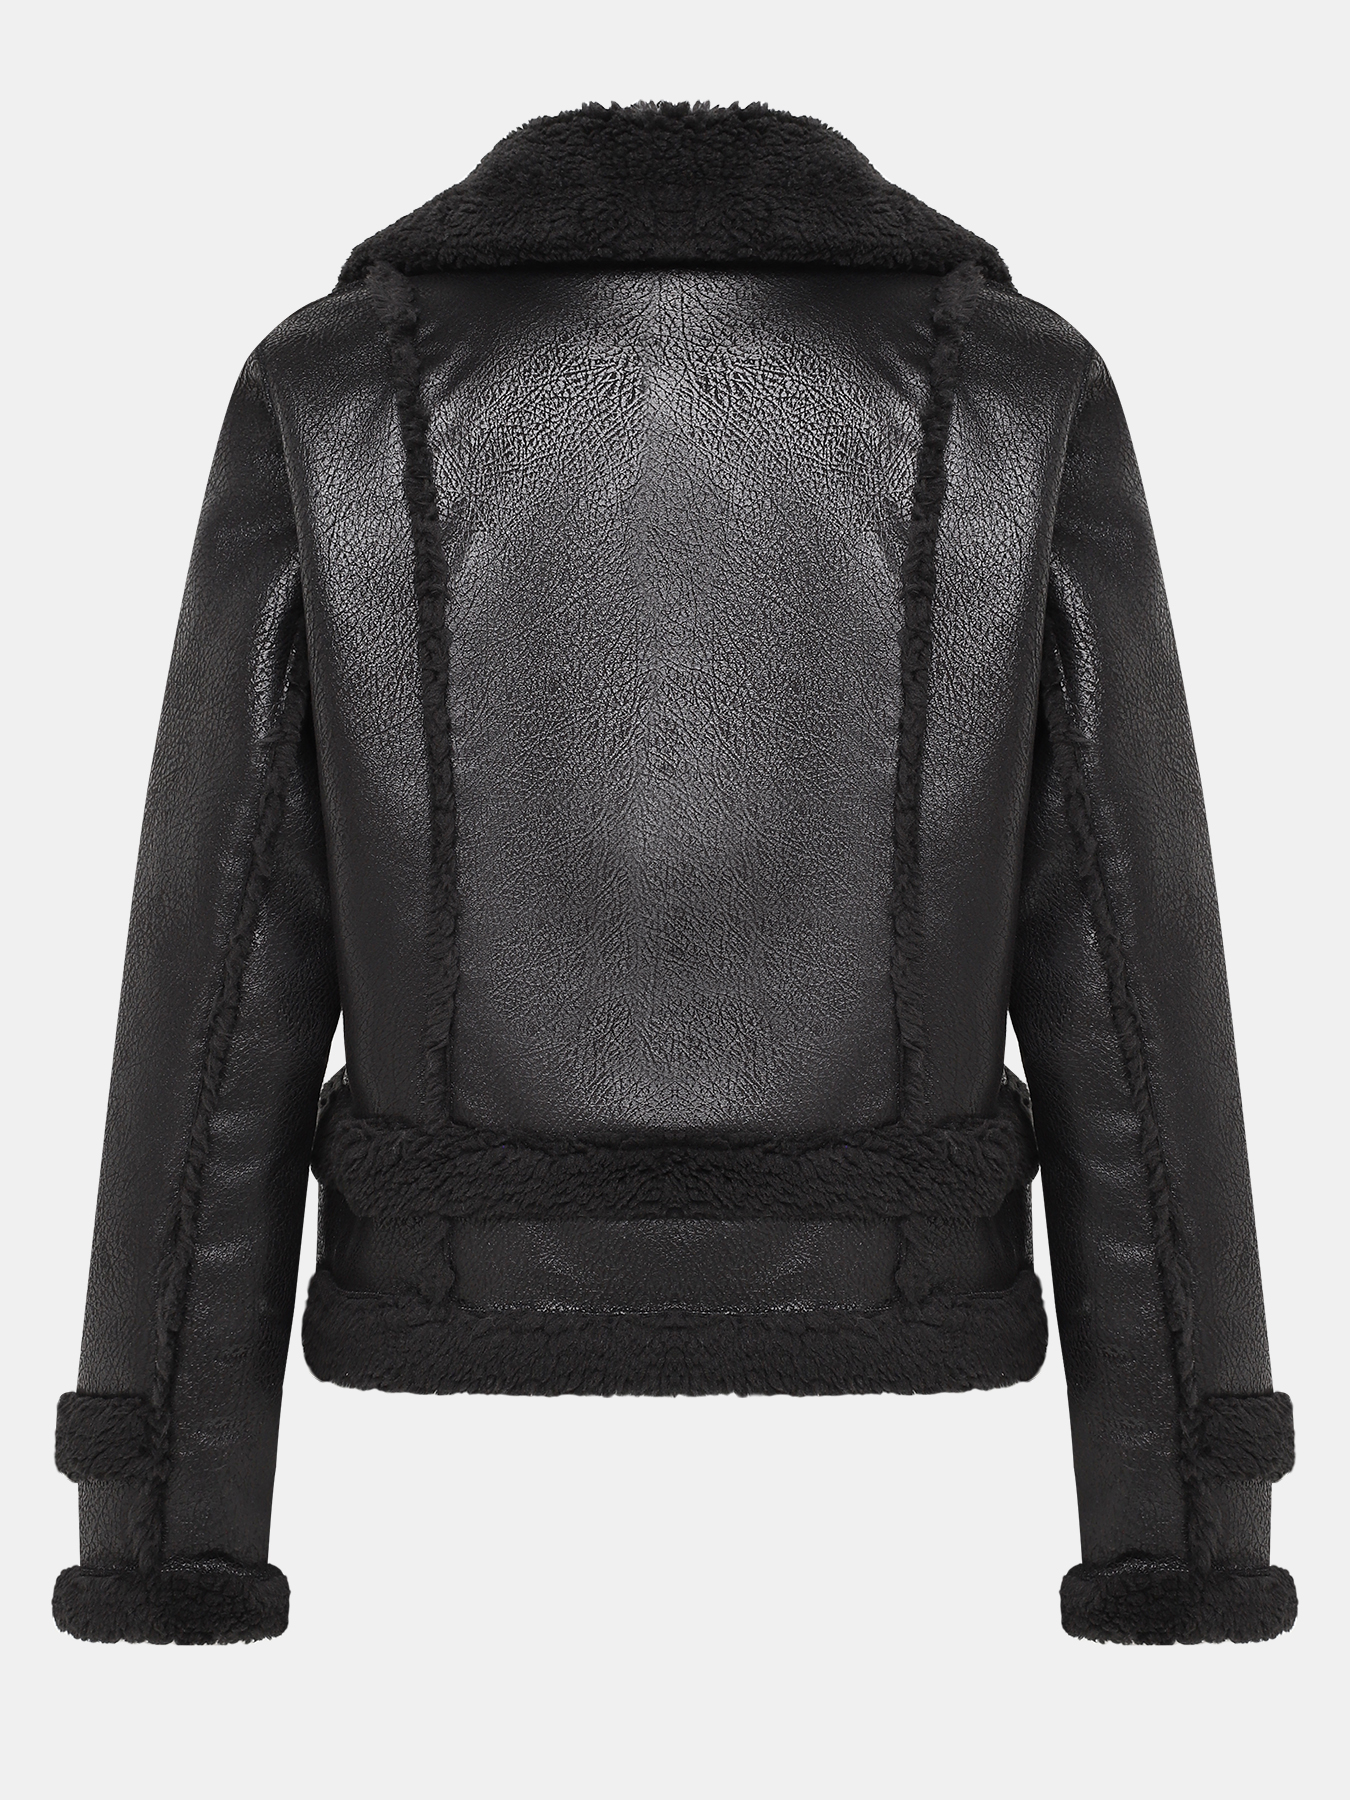 Утепленная куртка Liu Jo Sport 414786-044, цвет черный, размер 46-48 - фото 2